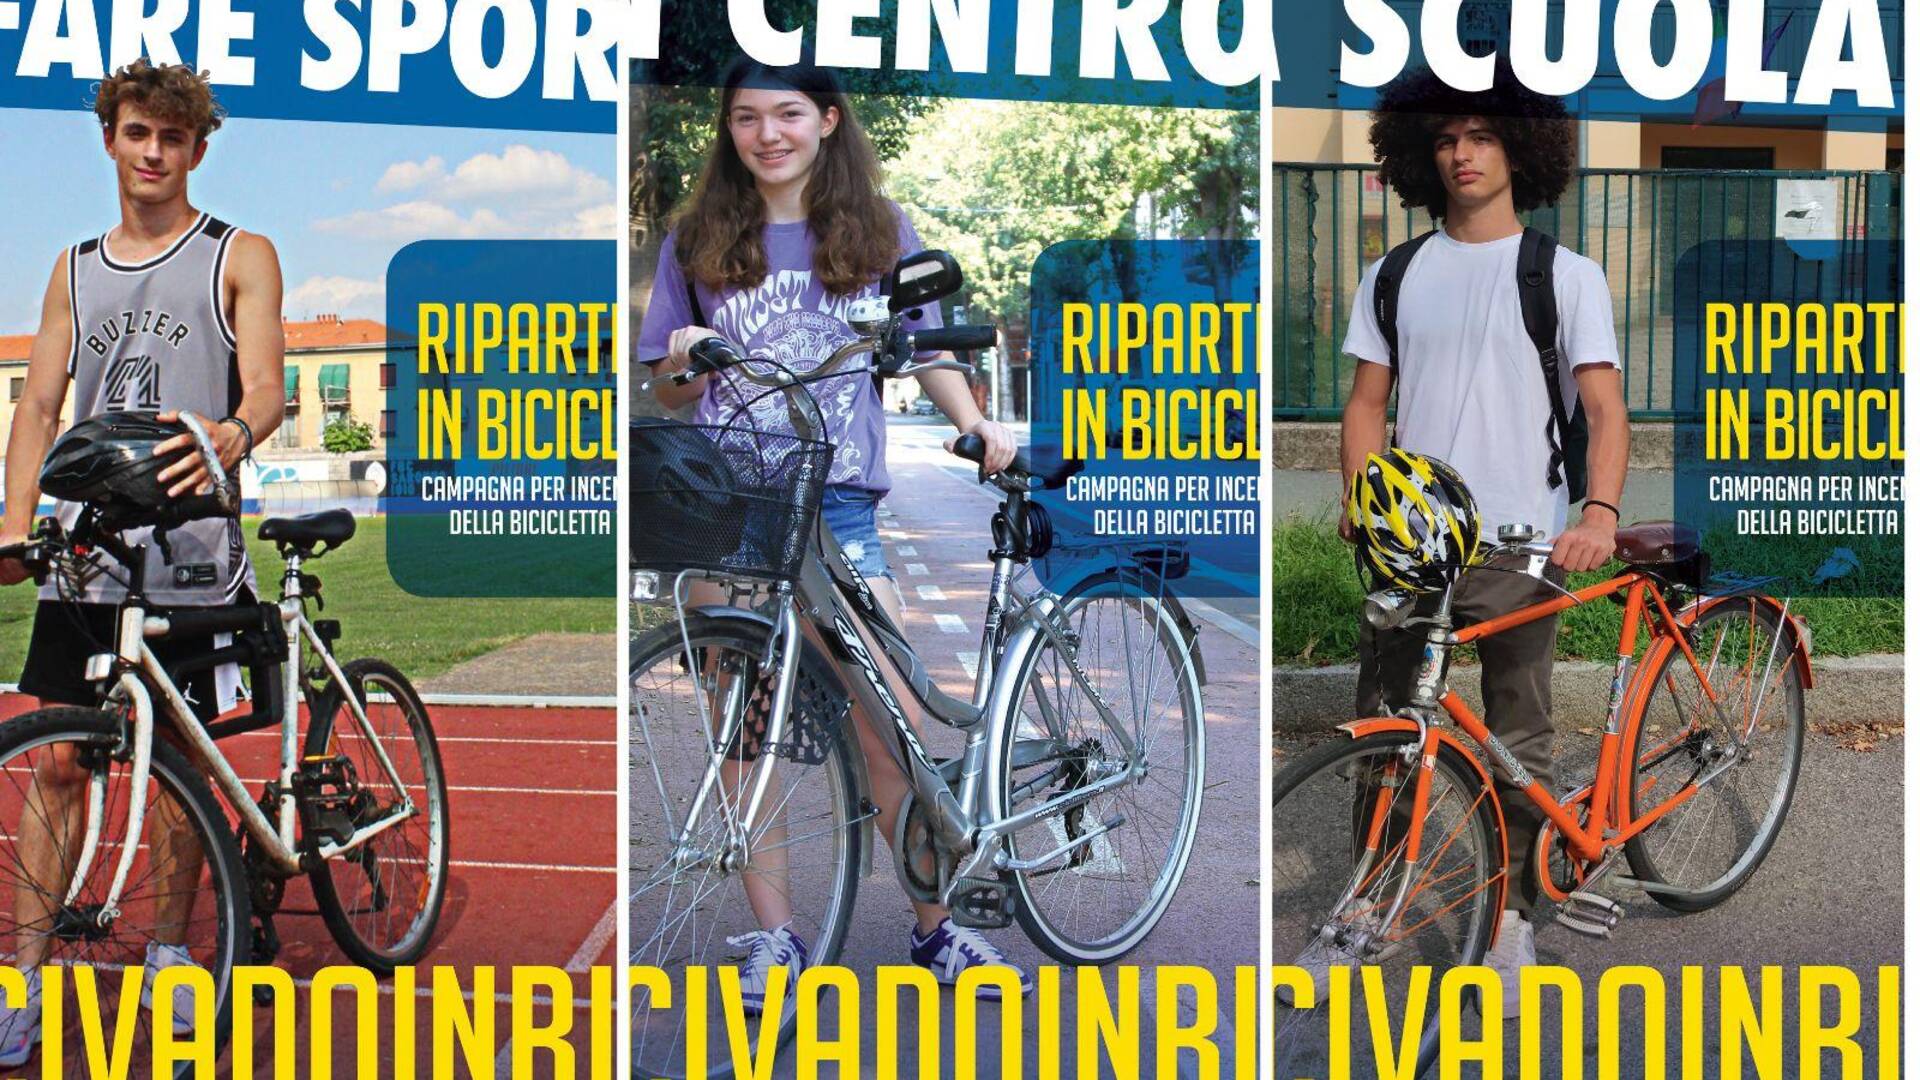 Saronno, #civadoinbici campagna di affissioni Fiab per sensibilizzare ragazzi e genitori ad usare la bici